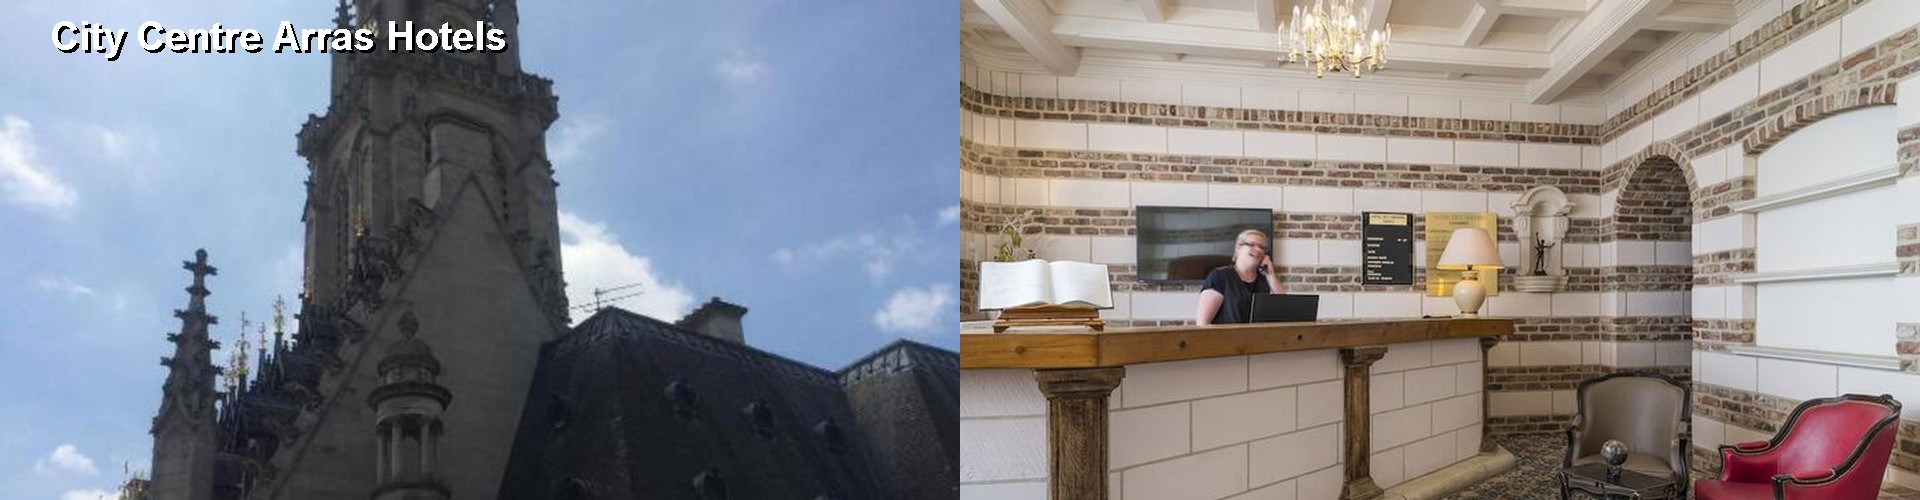 5 Best Hotels near City Centre Arras